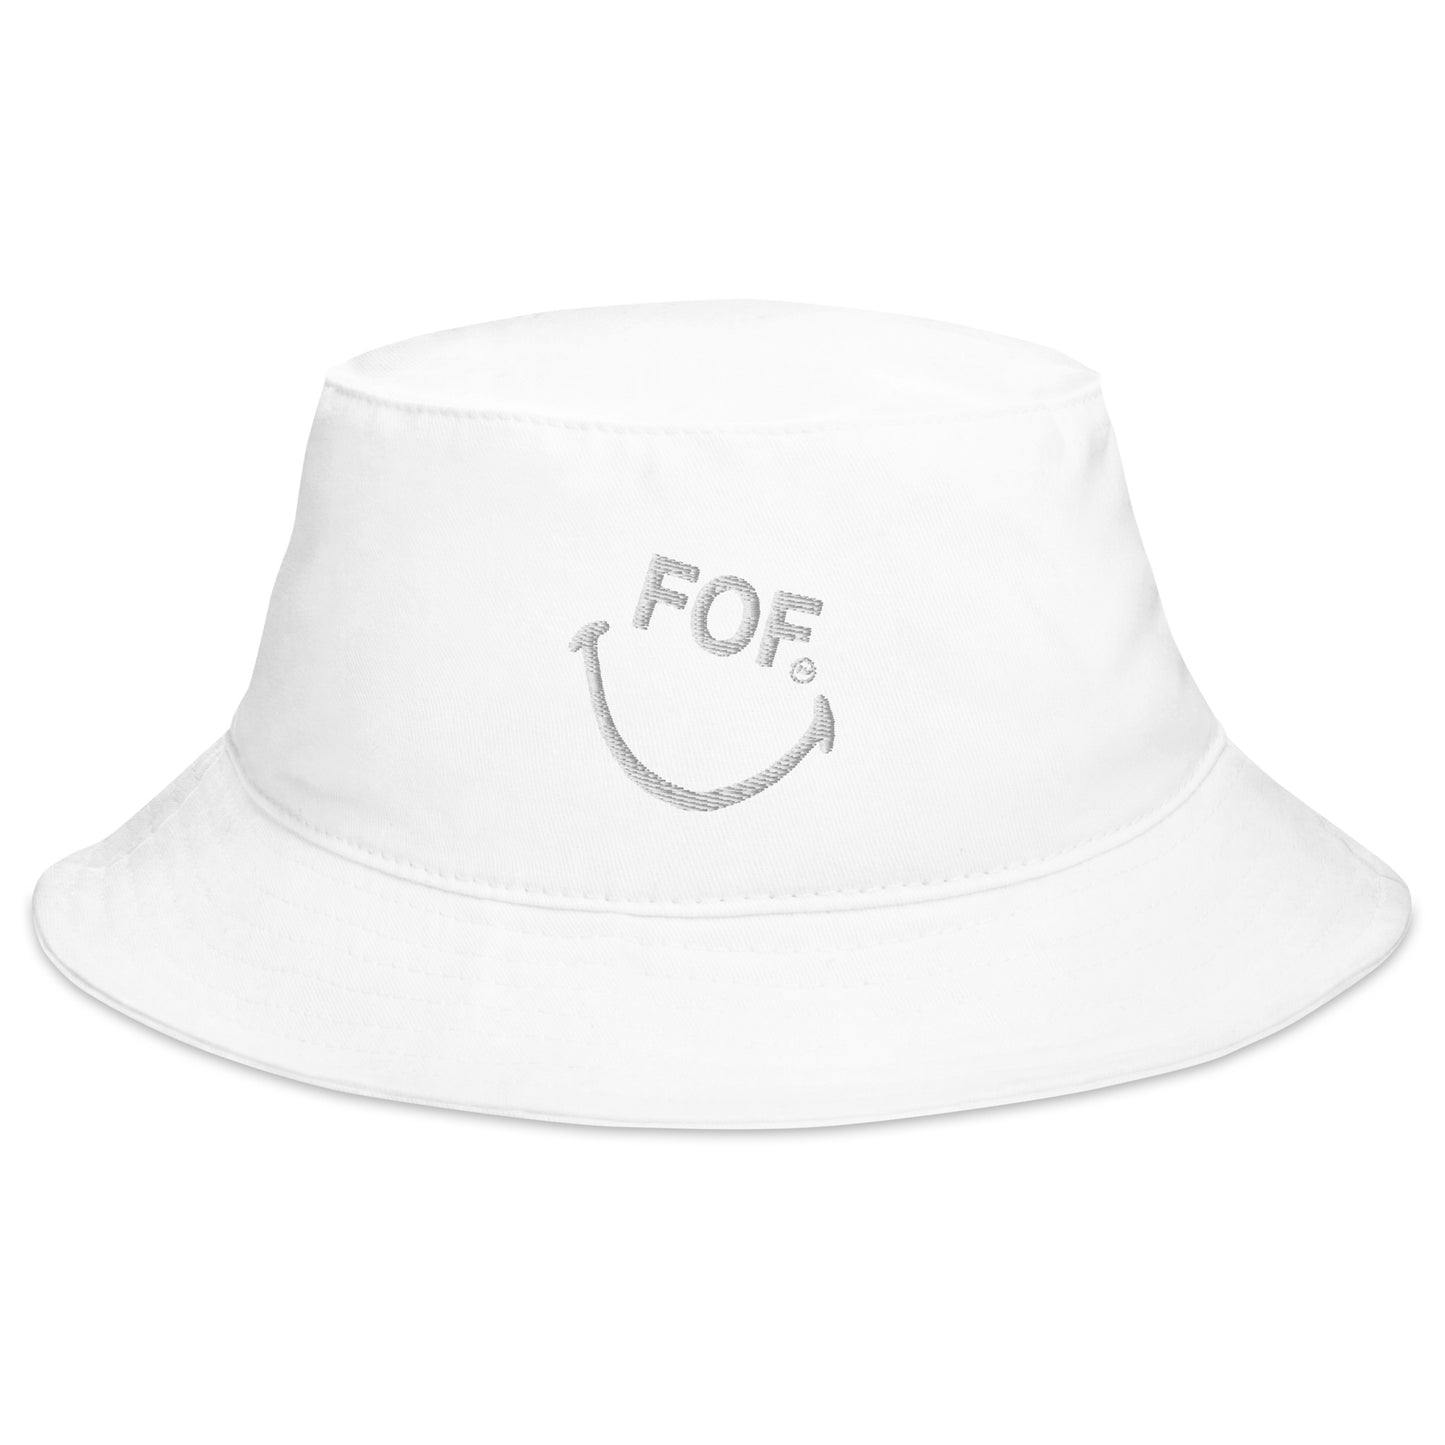 FOF Bucket Hat